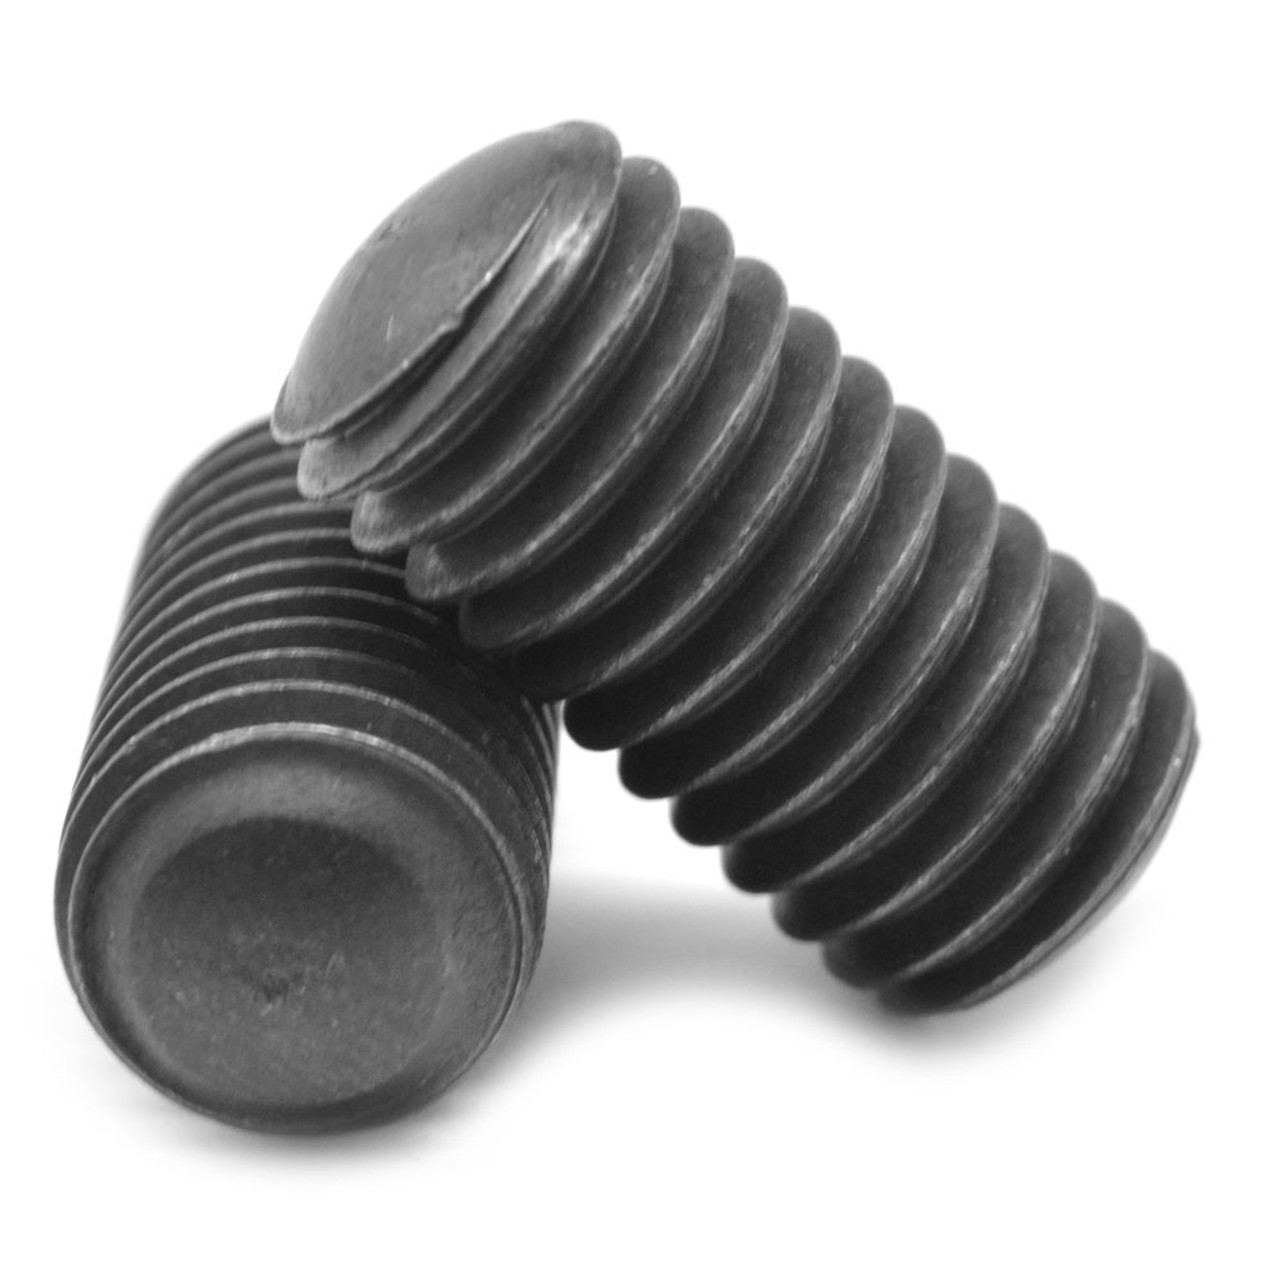 #10-24 x 3/8" Coarse Thread Socket Set Screw Oval Point Alloy Steel Black Oxide